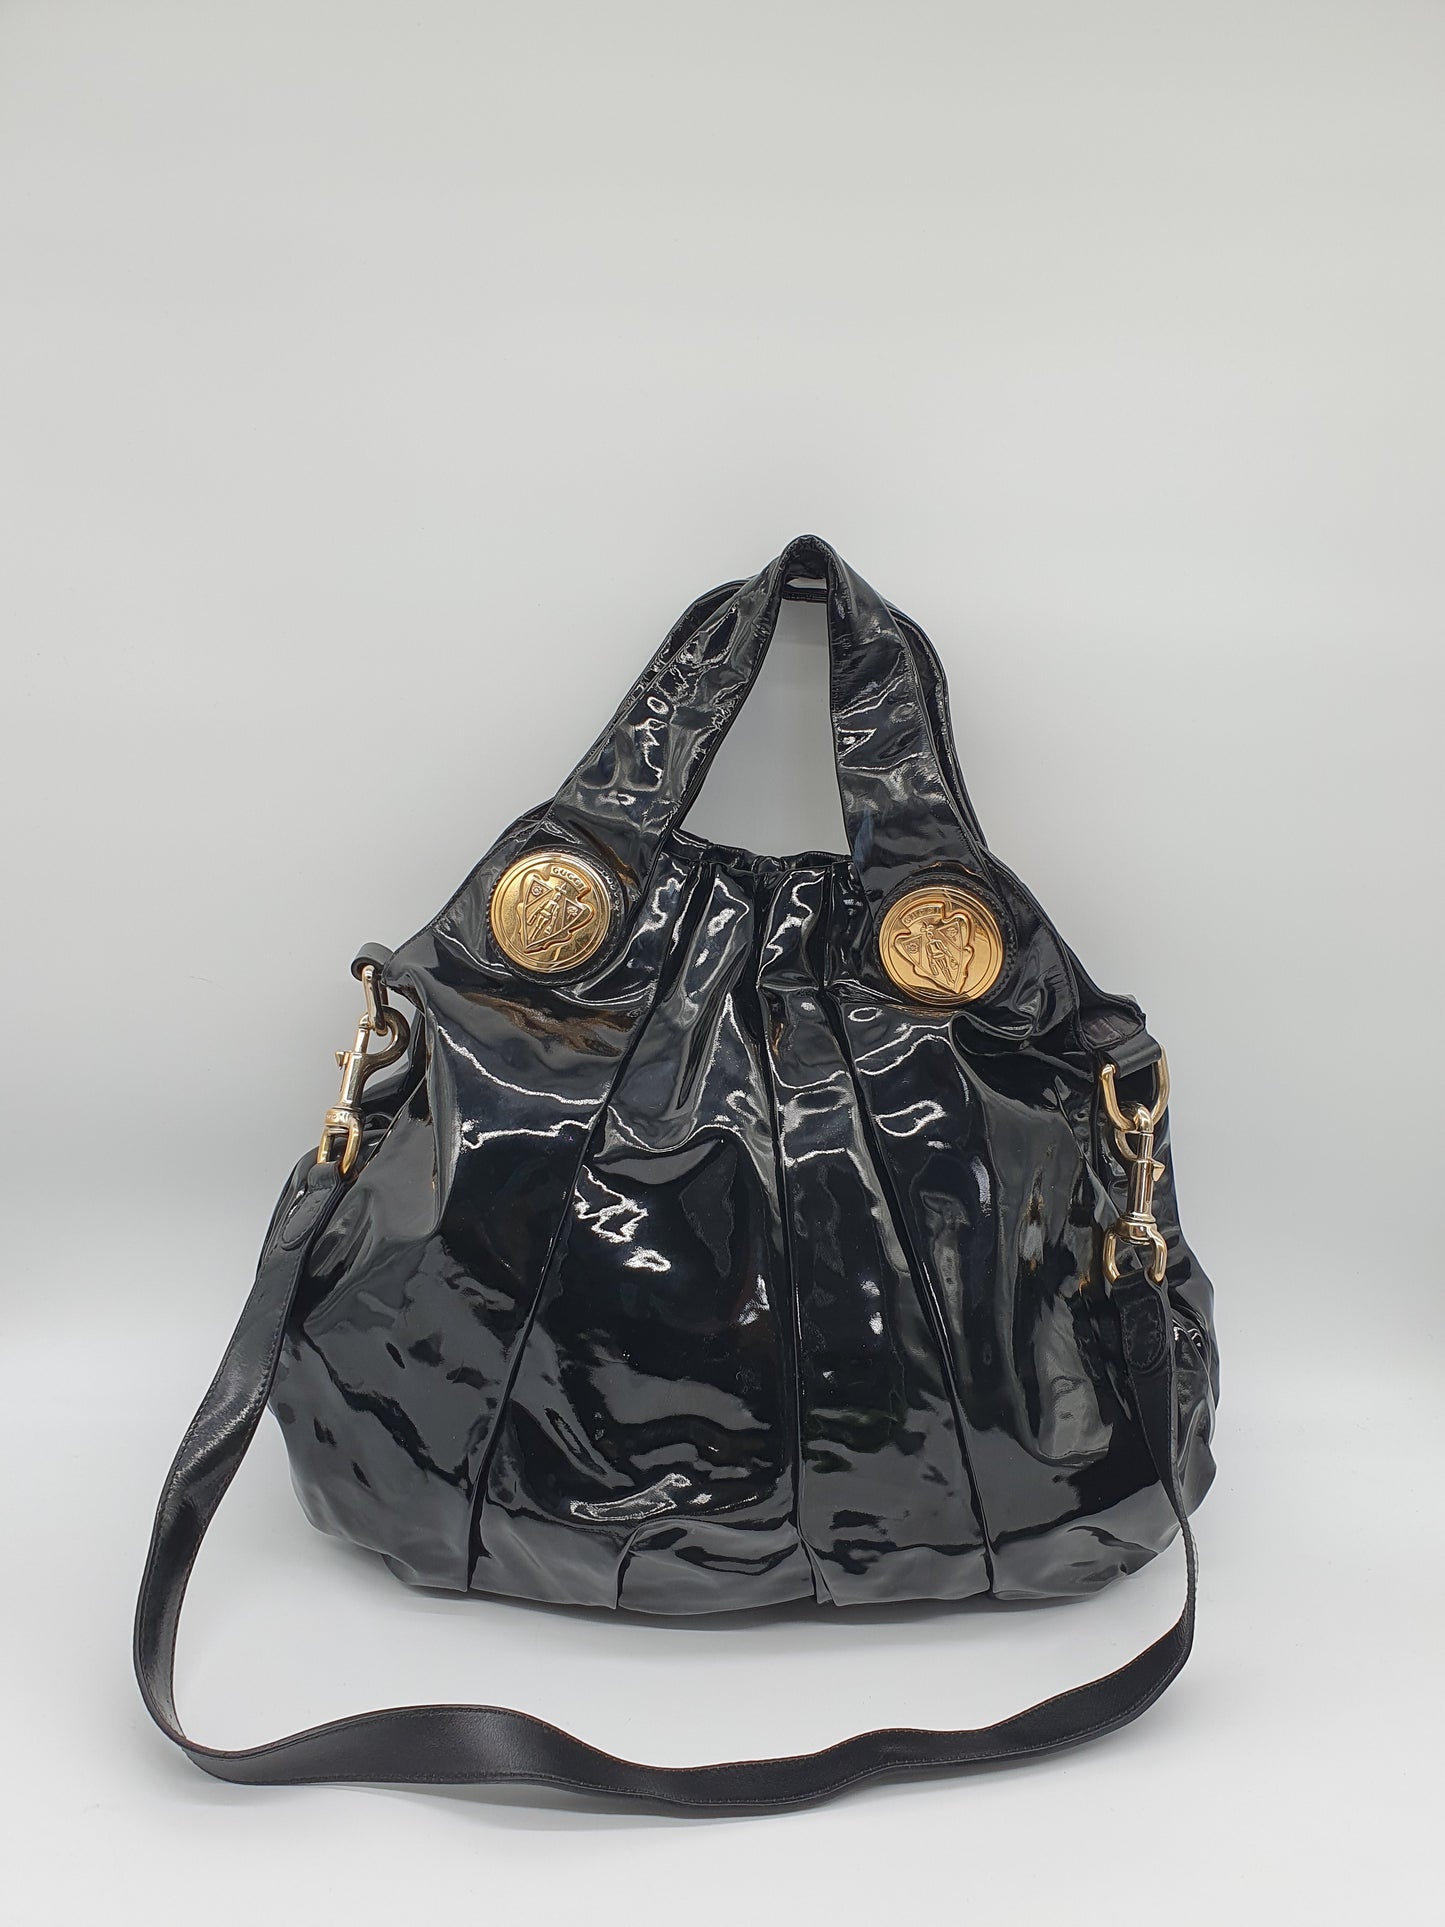 Gucci Hysteria handbag